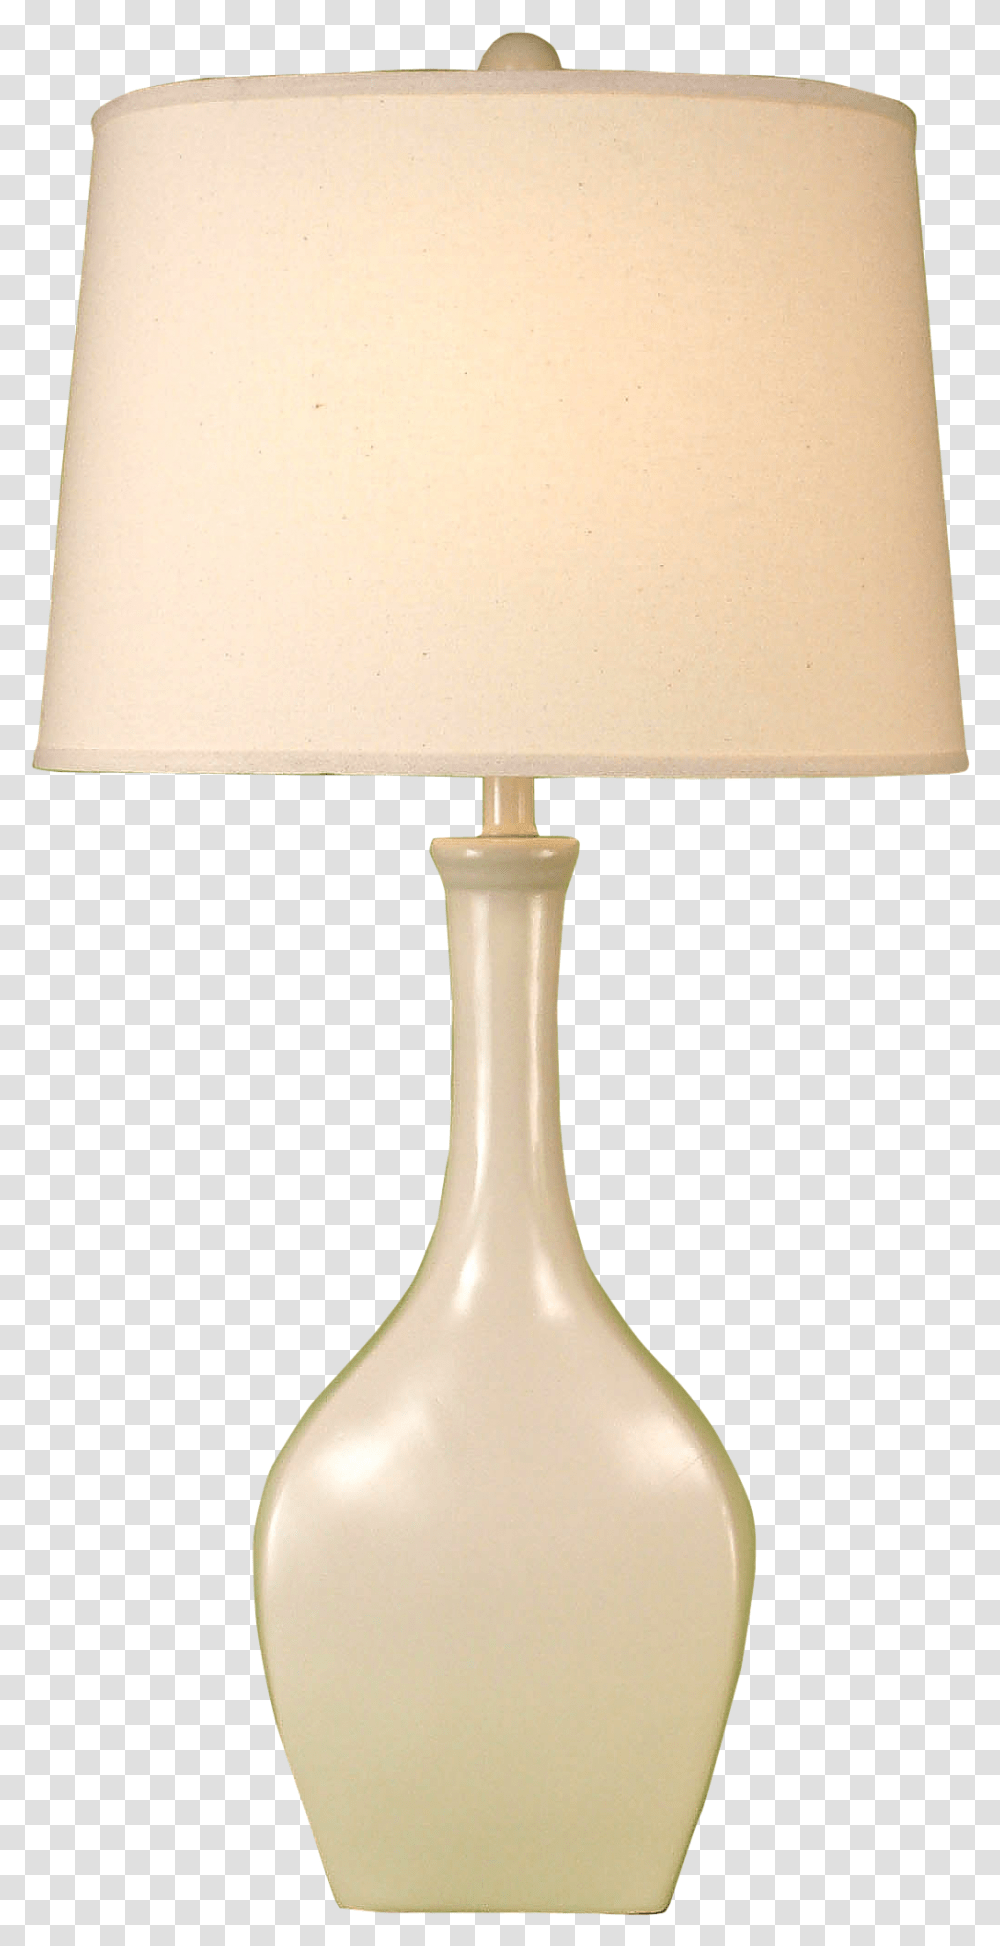 Genie Lamp, Table Lamp, Lampshade Transparent Png